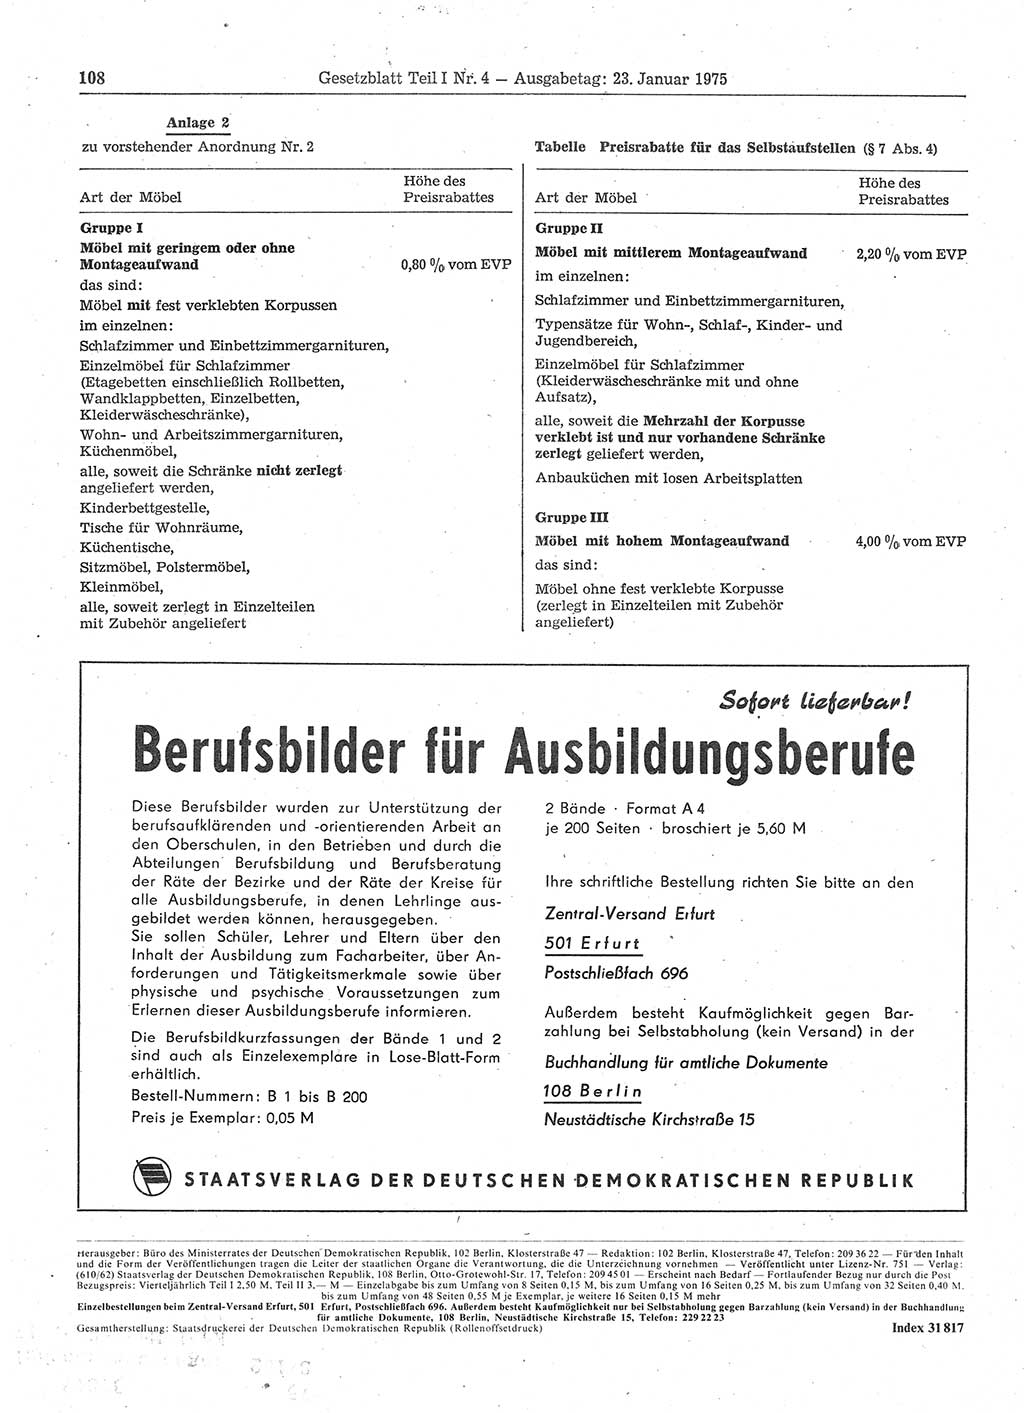 Gesetzblatt (GBl.) der Deutschen Demokratischen Republik (DDR) Teil Ⅰ 1975, Seite 108 (GBl. DDR Ⅰ 1975, S. 108)